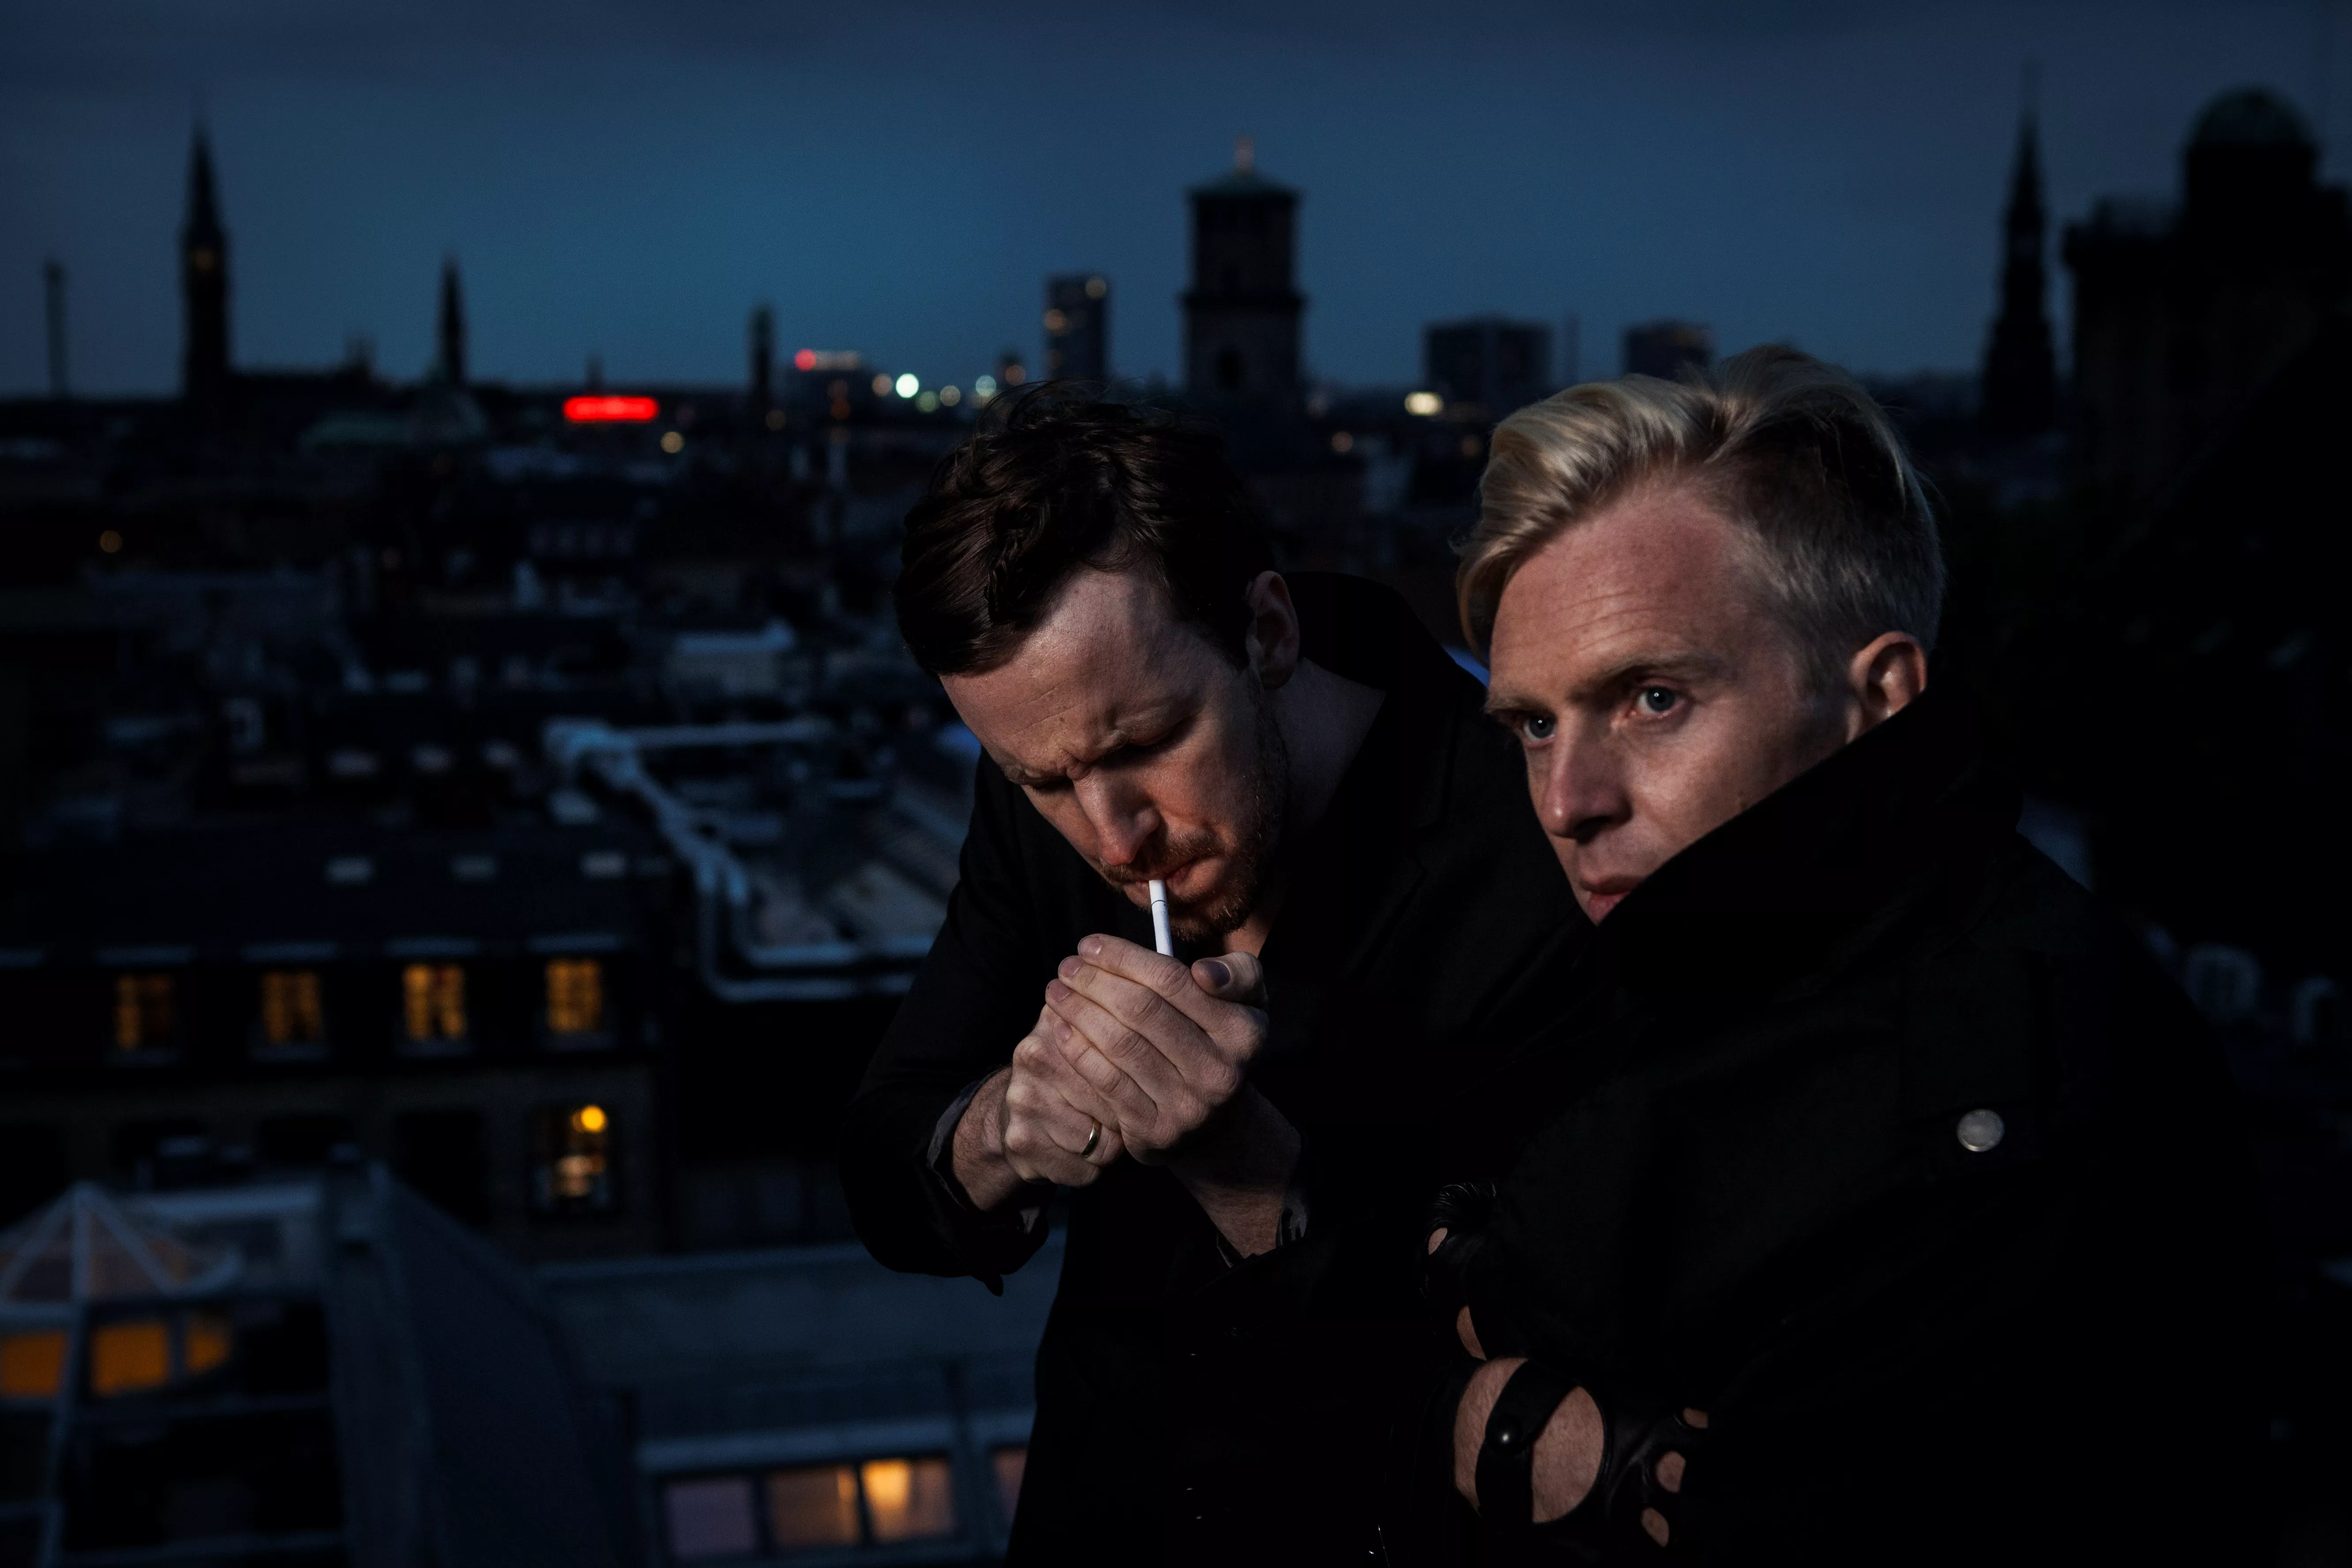 Helsinki Poetry: Vi laver Danmarks mest grænsebrydende musikvideo